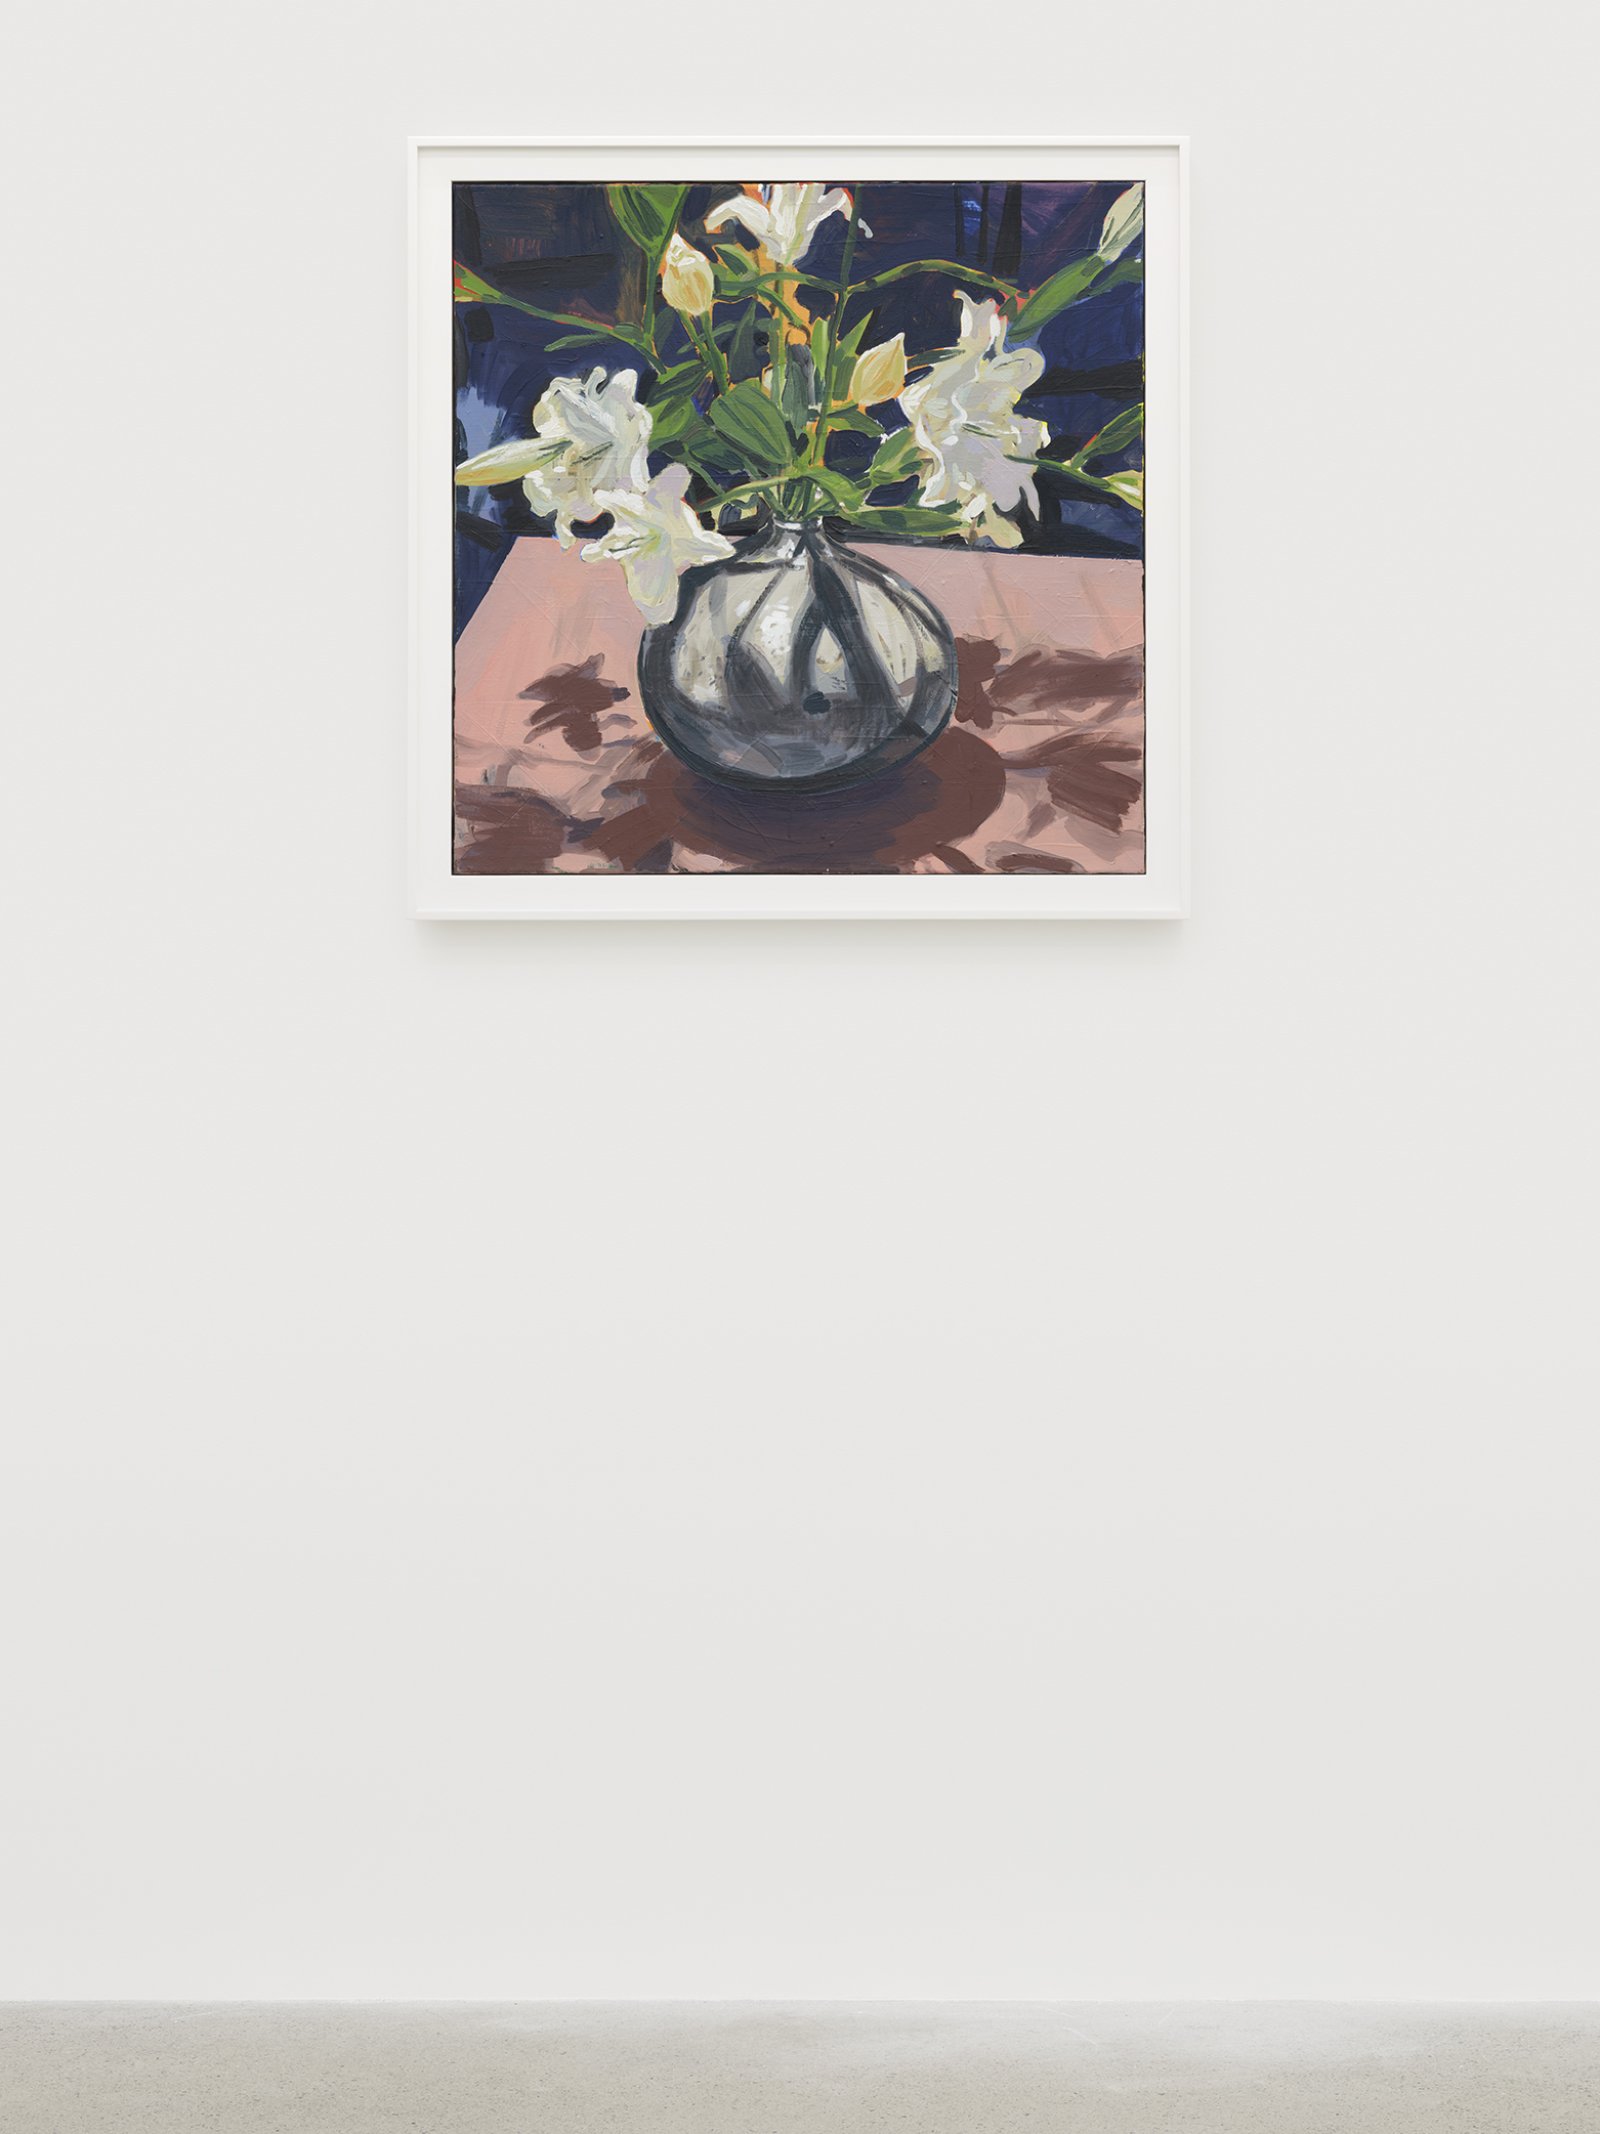 Damian Moppett, Lilies (Pink), 2020, oil on canvas, 34 x 34 in. (86 x 86 cm) by Damian Moppett